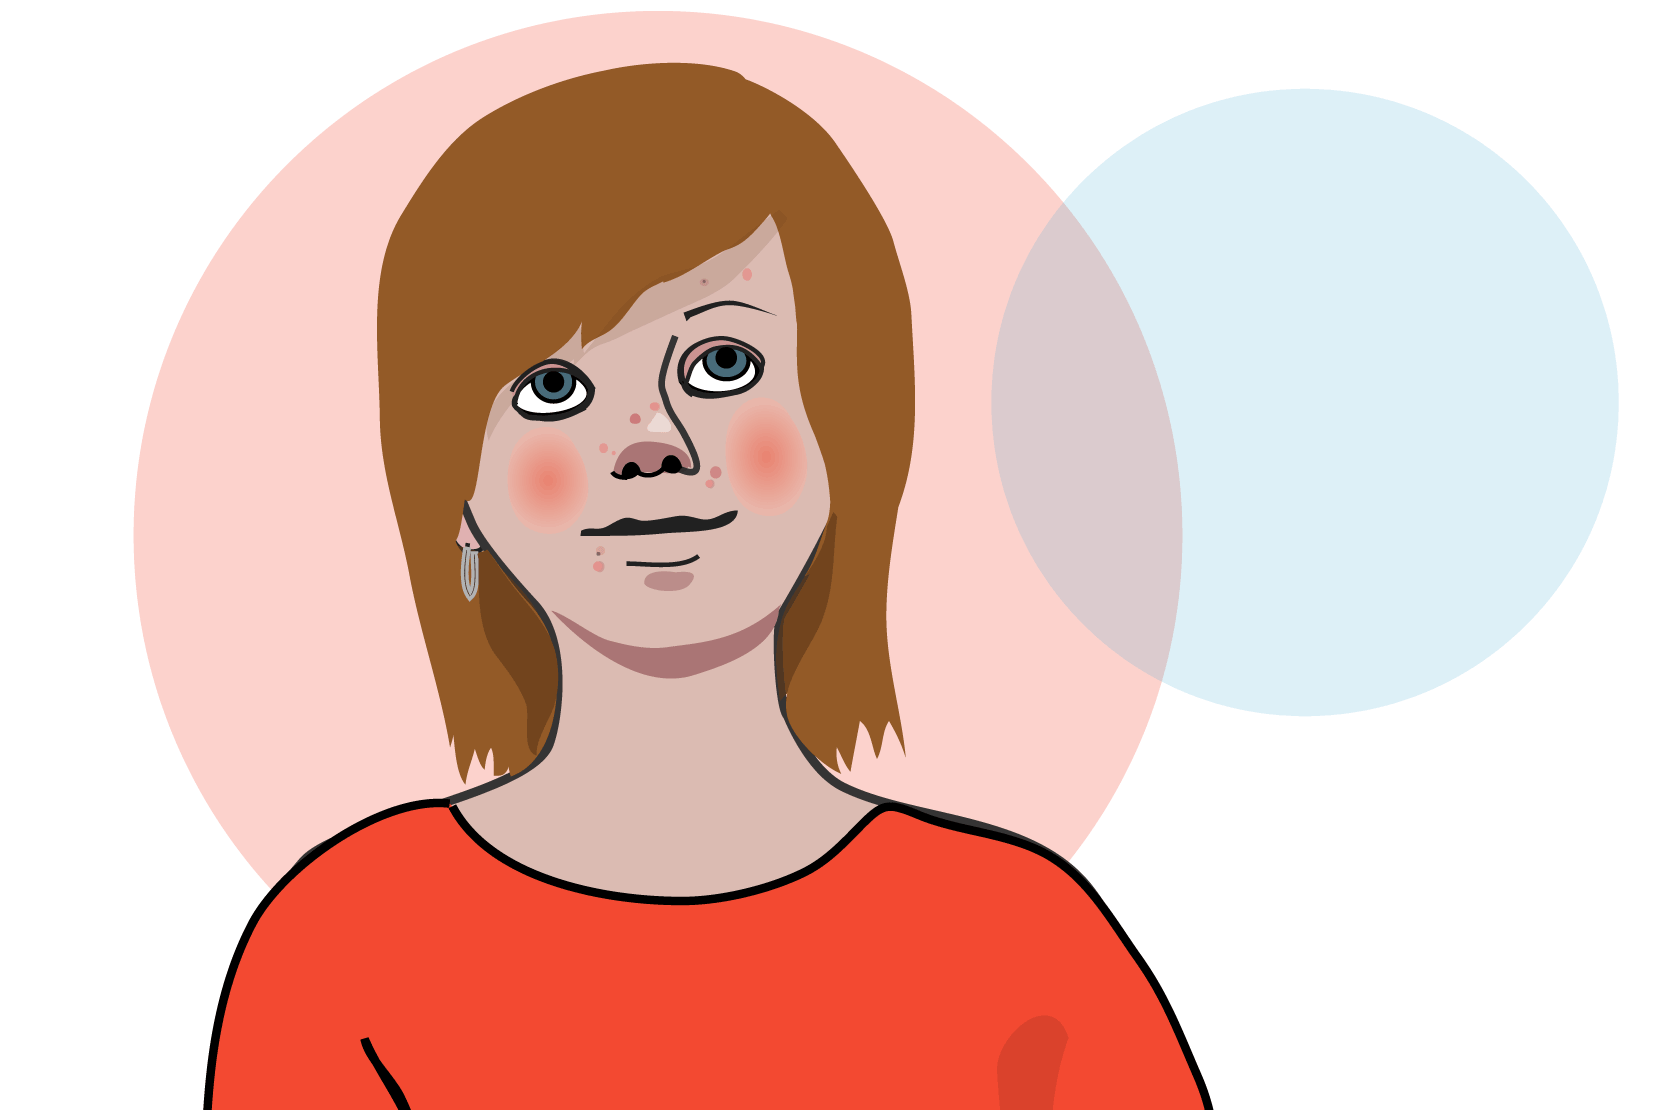 En person med röda kinder som ler lite och ser ut att tänka på något. Illustration.